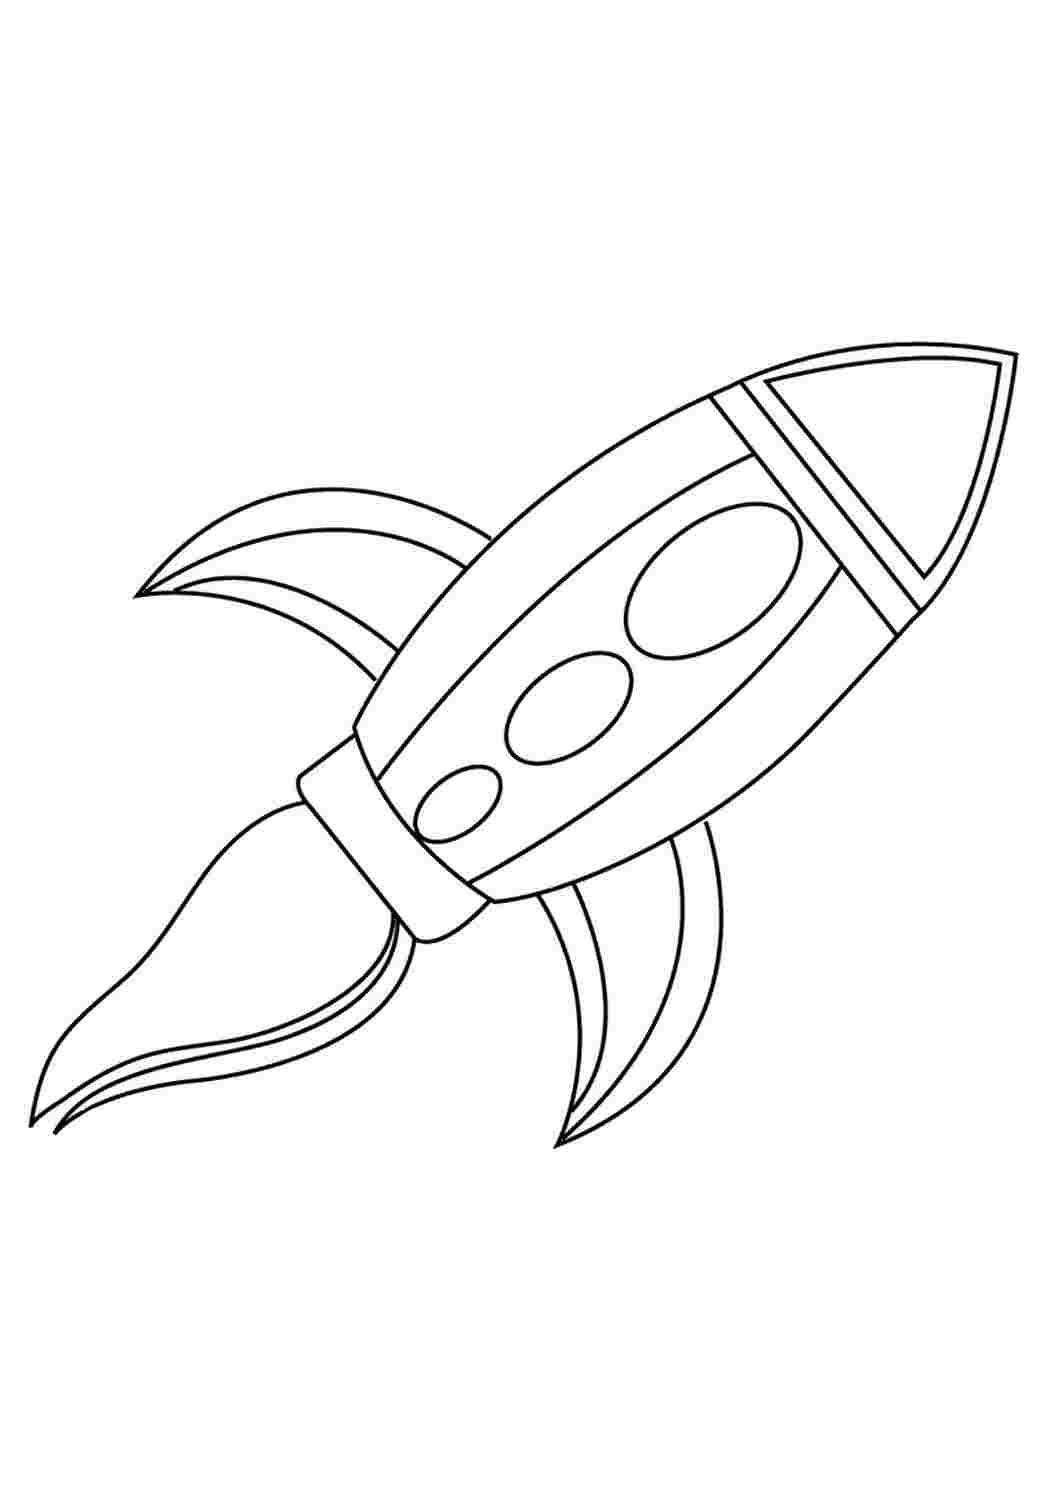 Как нарисовать ракету легко и красиво